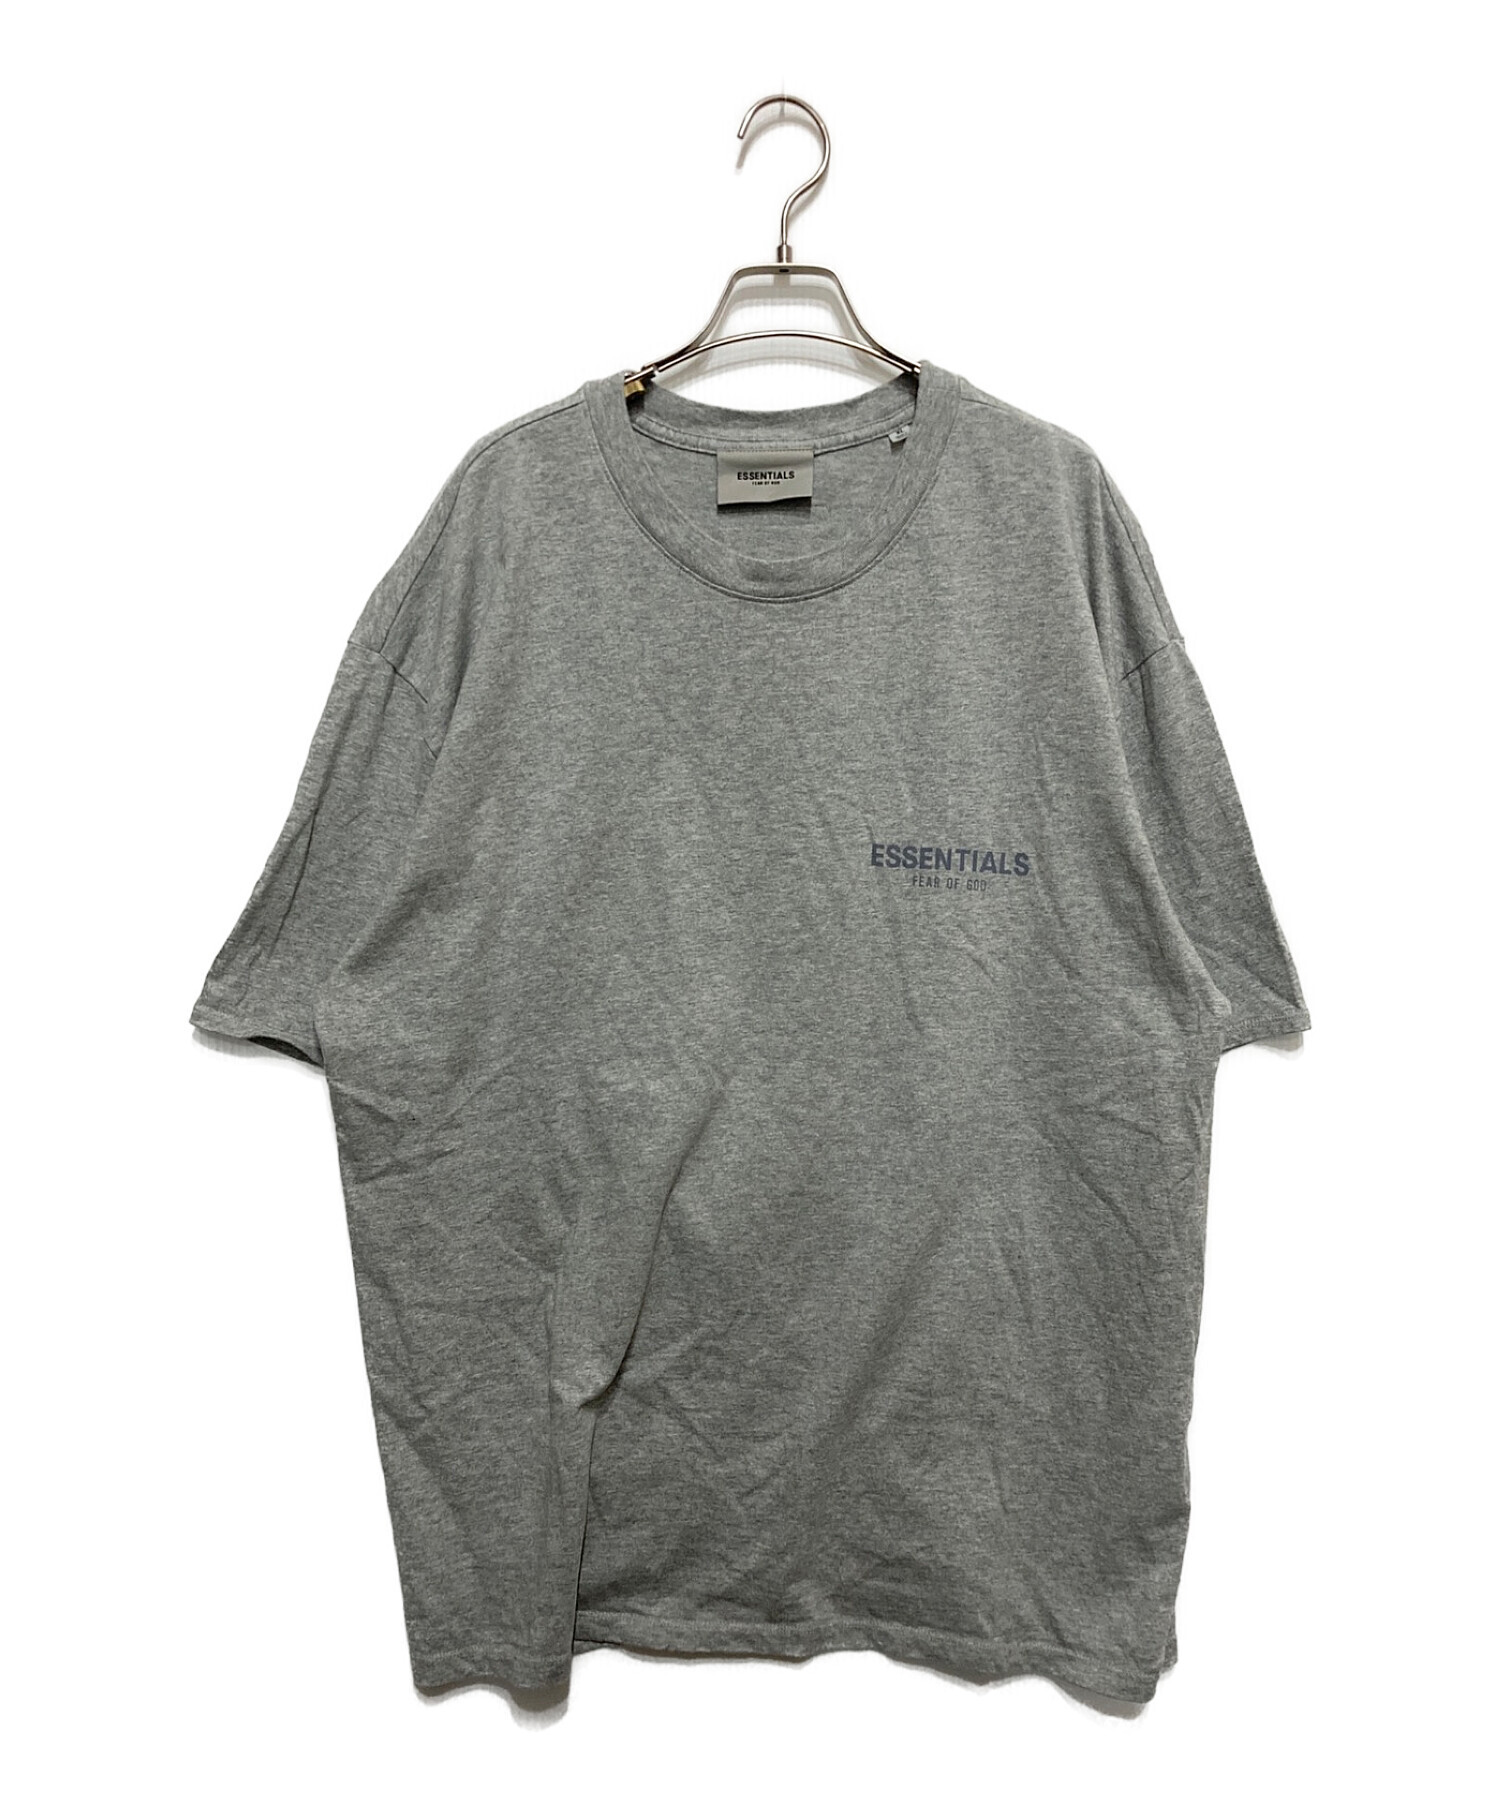 FOG ESSENTIALS (フィアオブゴッド エッセンシャル) Tシャツ グレー サイズ:XL